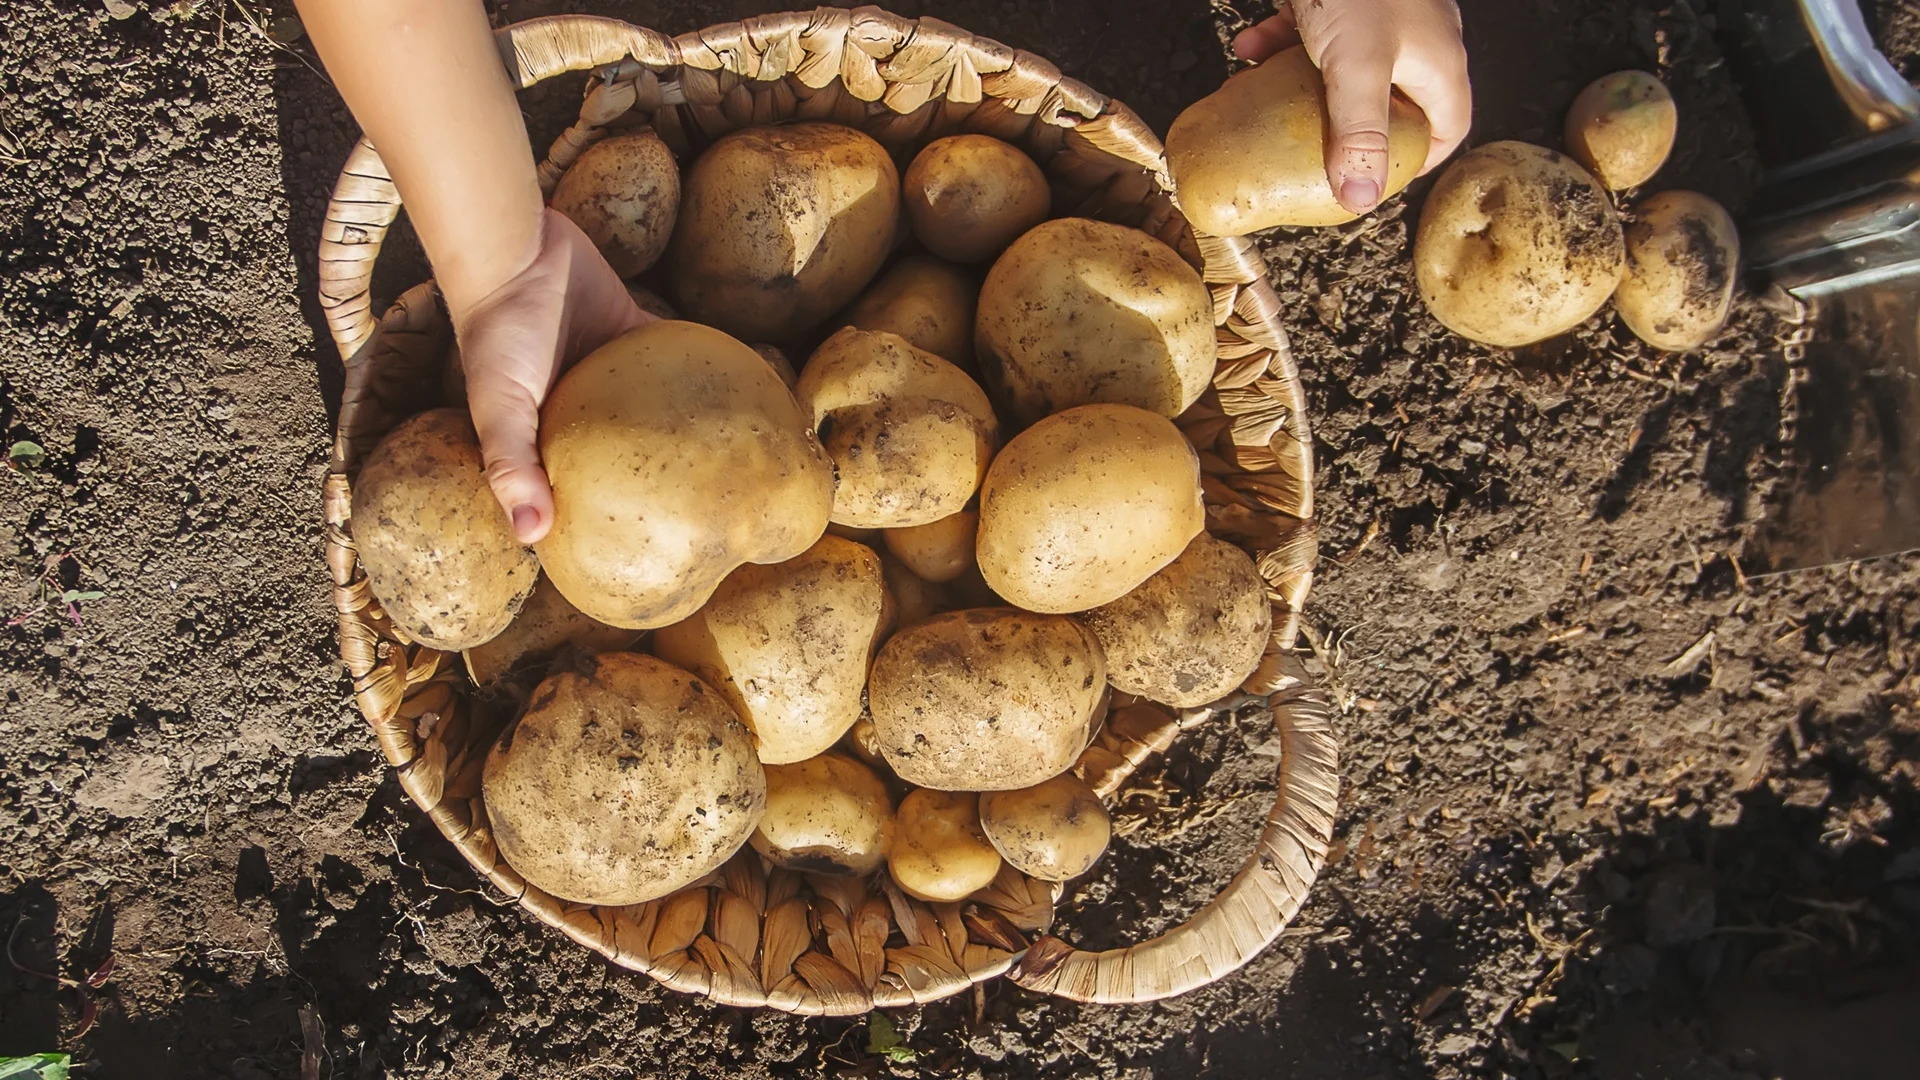 Торене на картофите след поникване - ето как се прави